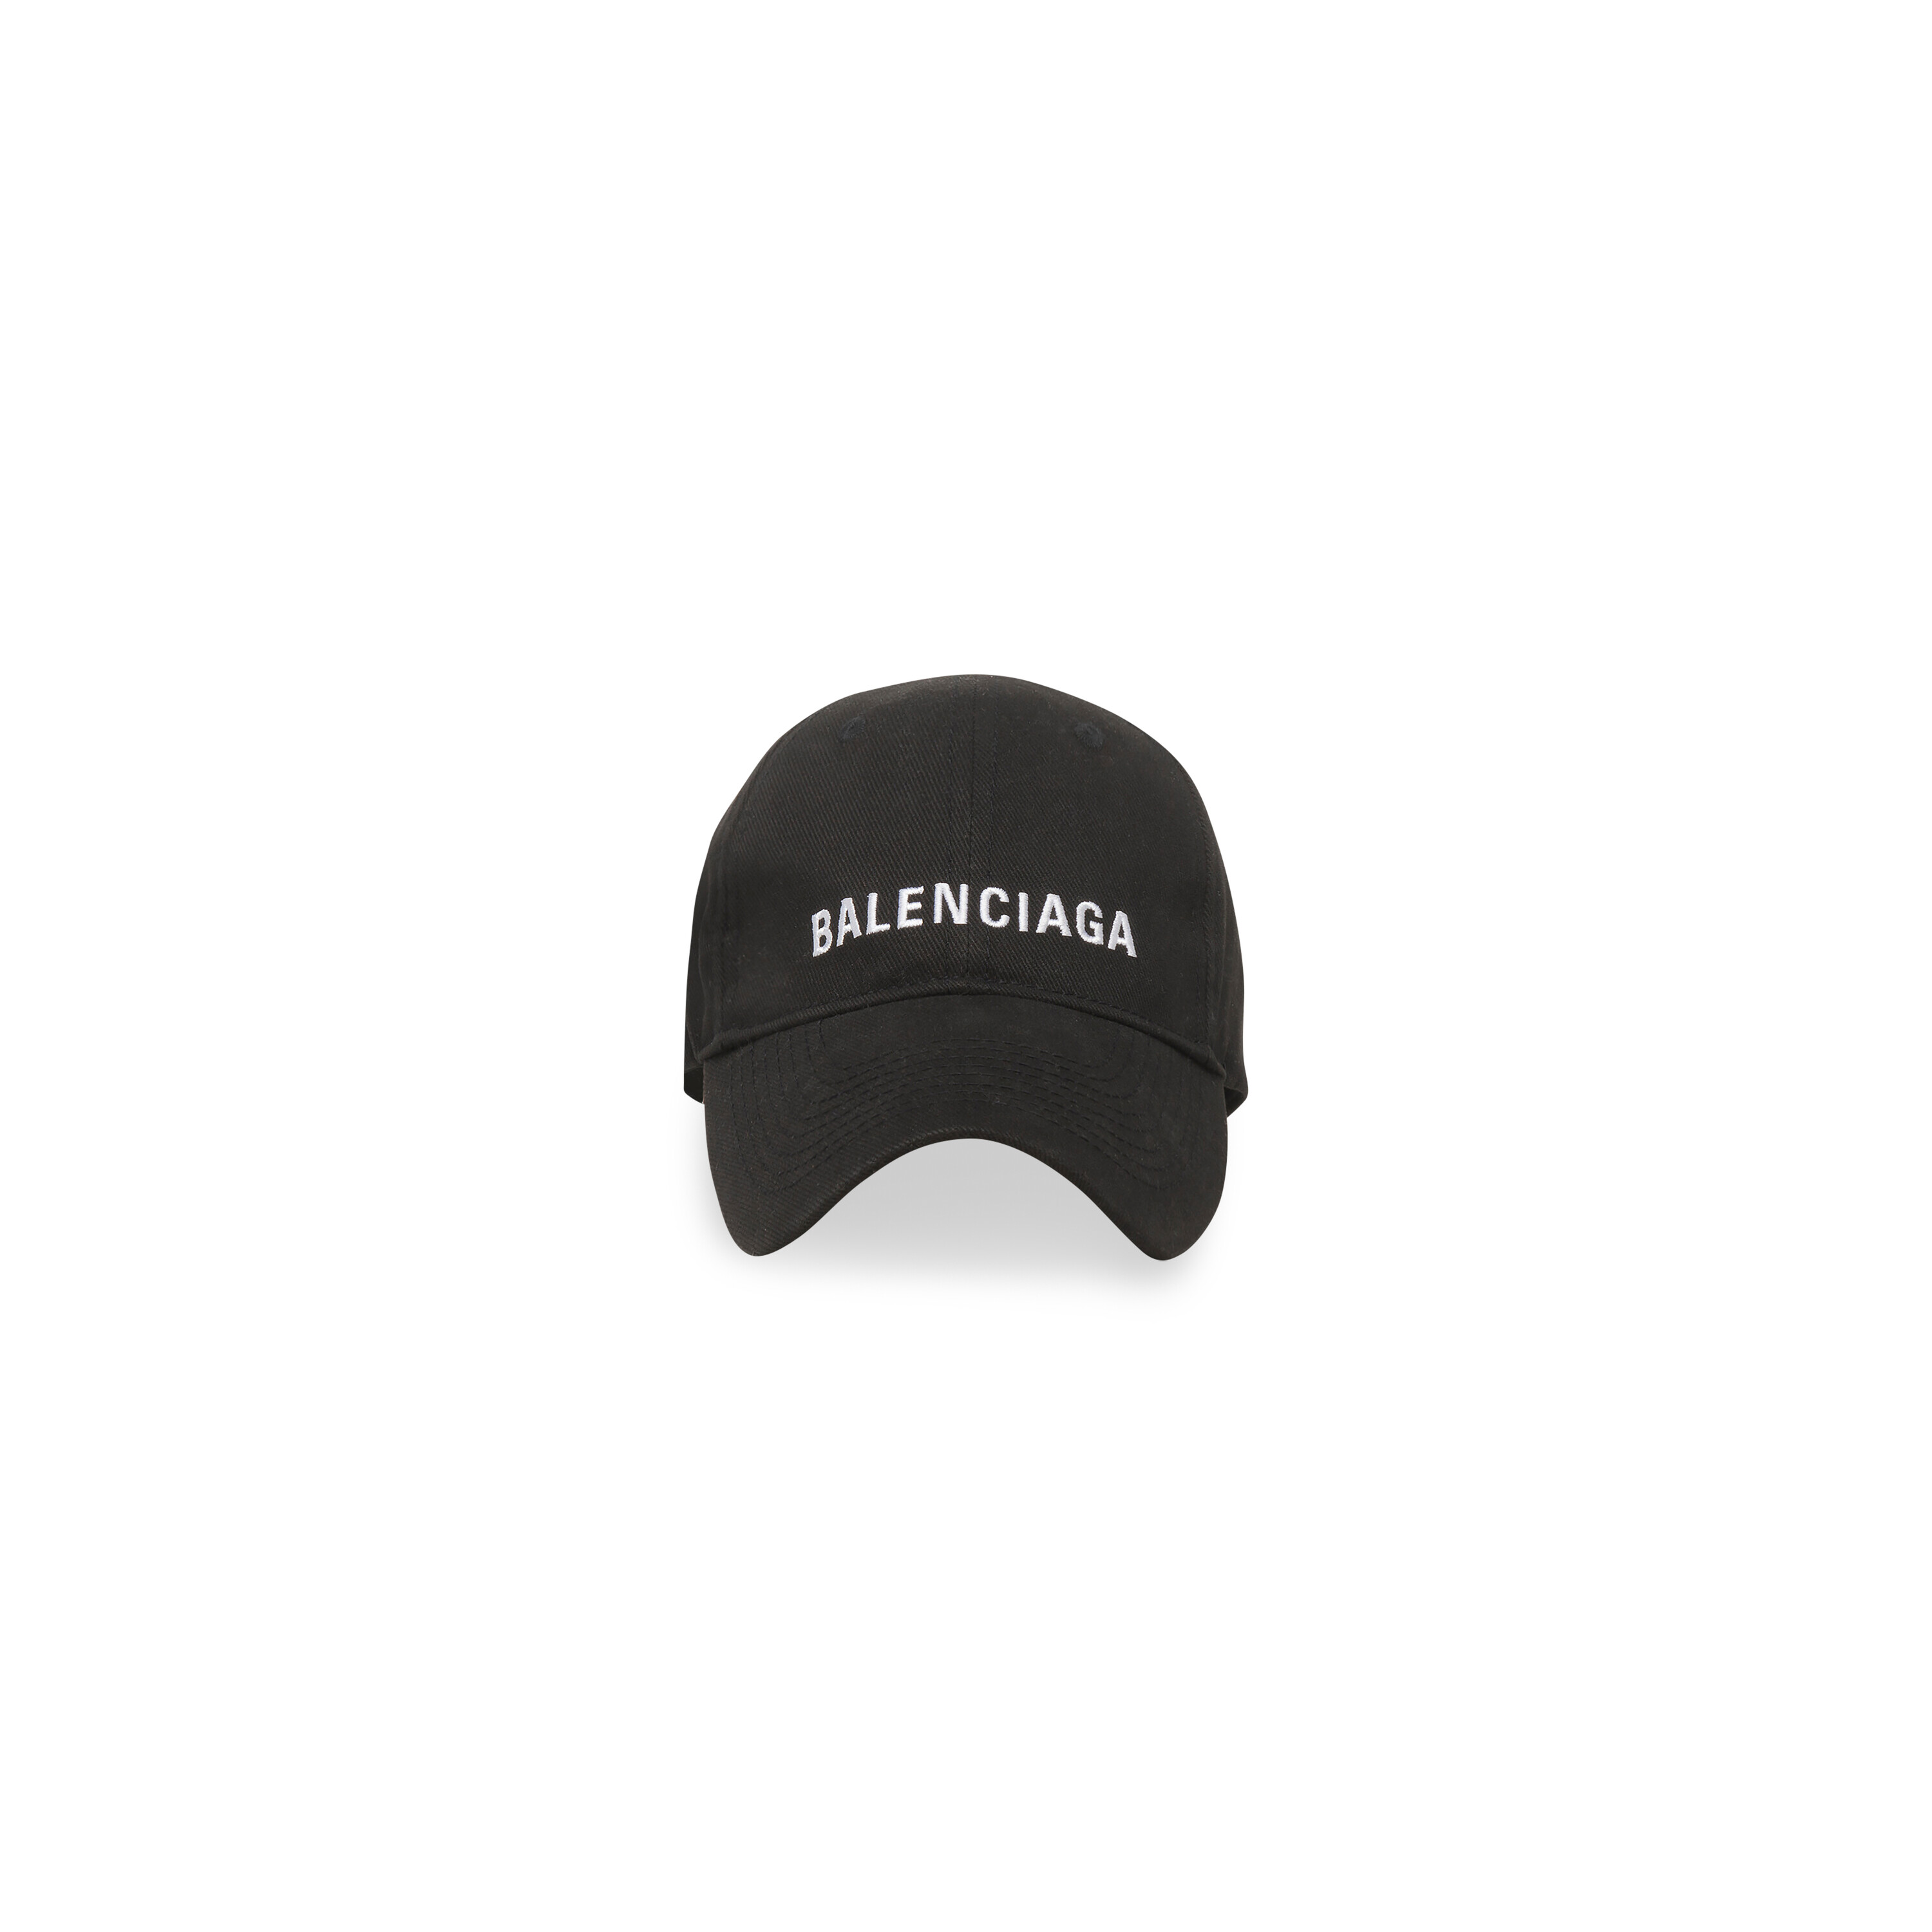 バレンシアガ CAP 帽子